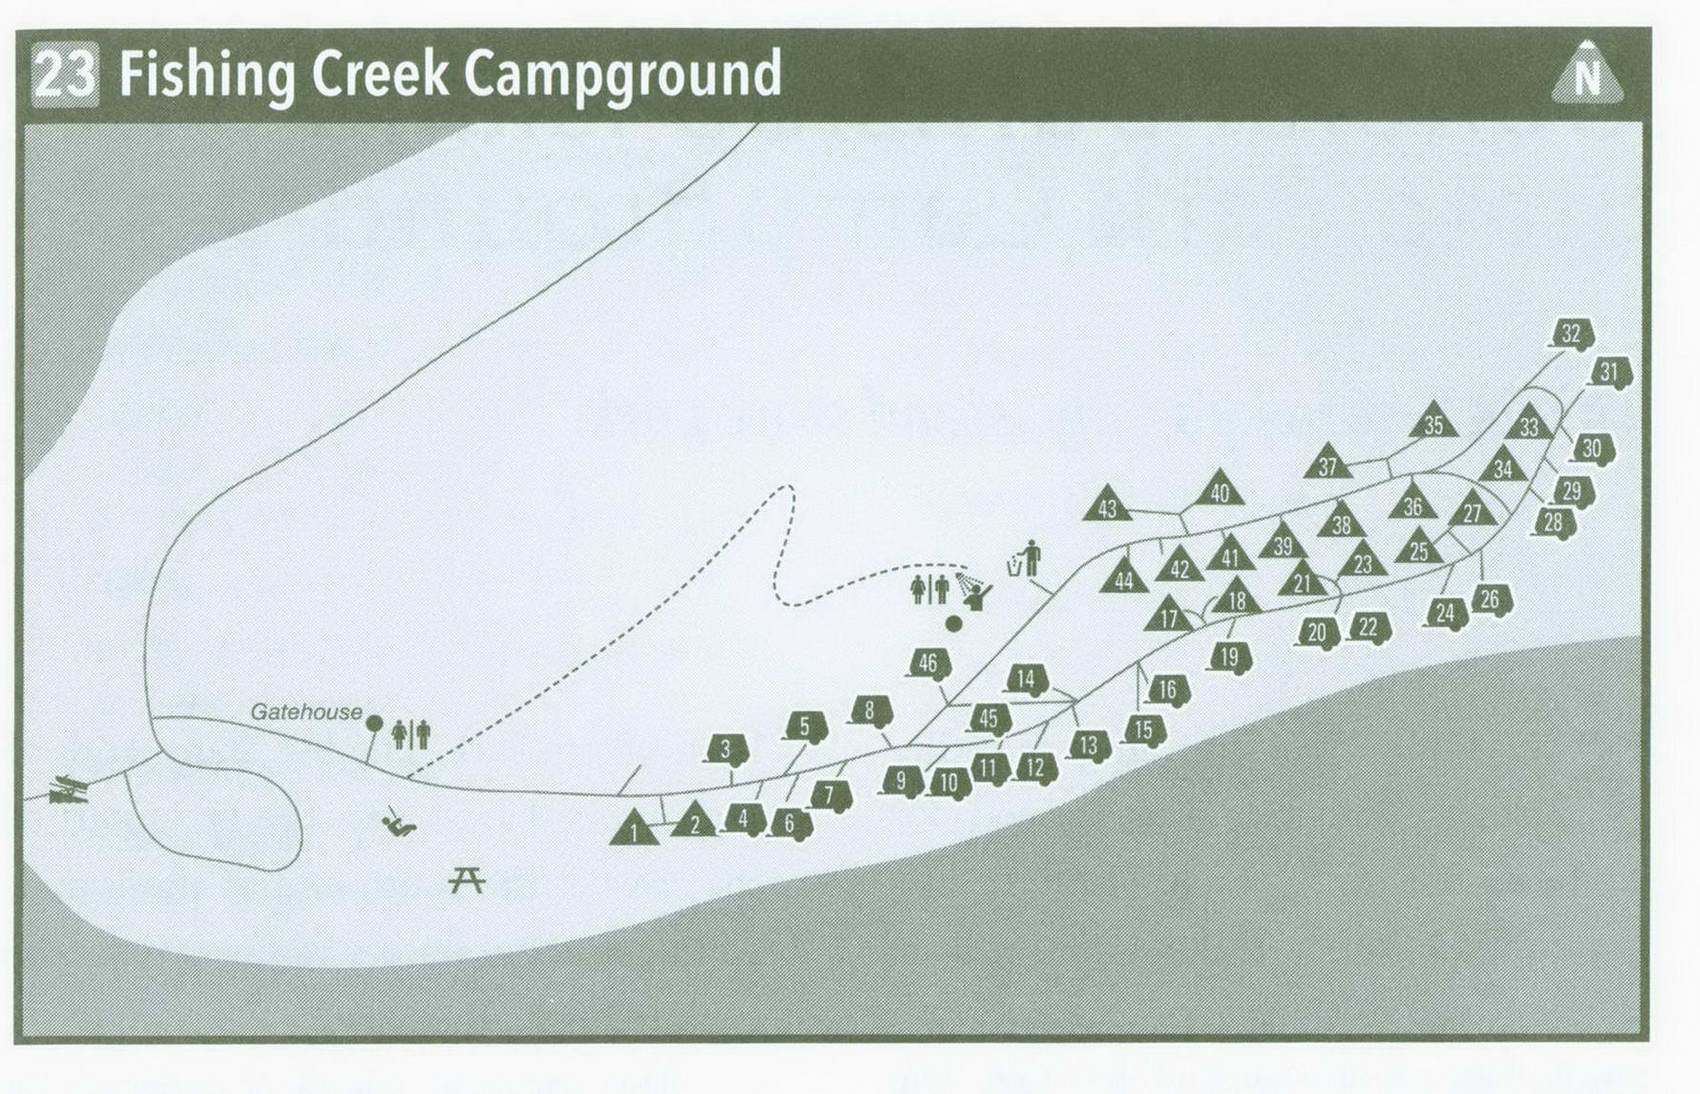 Plan of Fishing Creek Campground